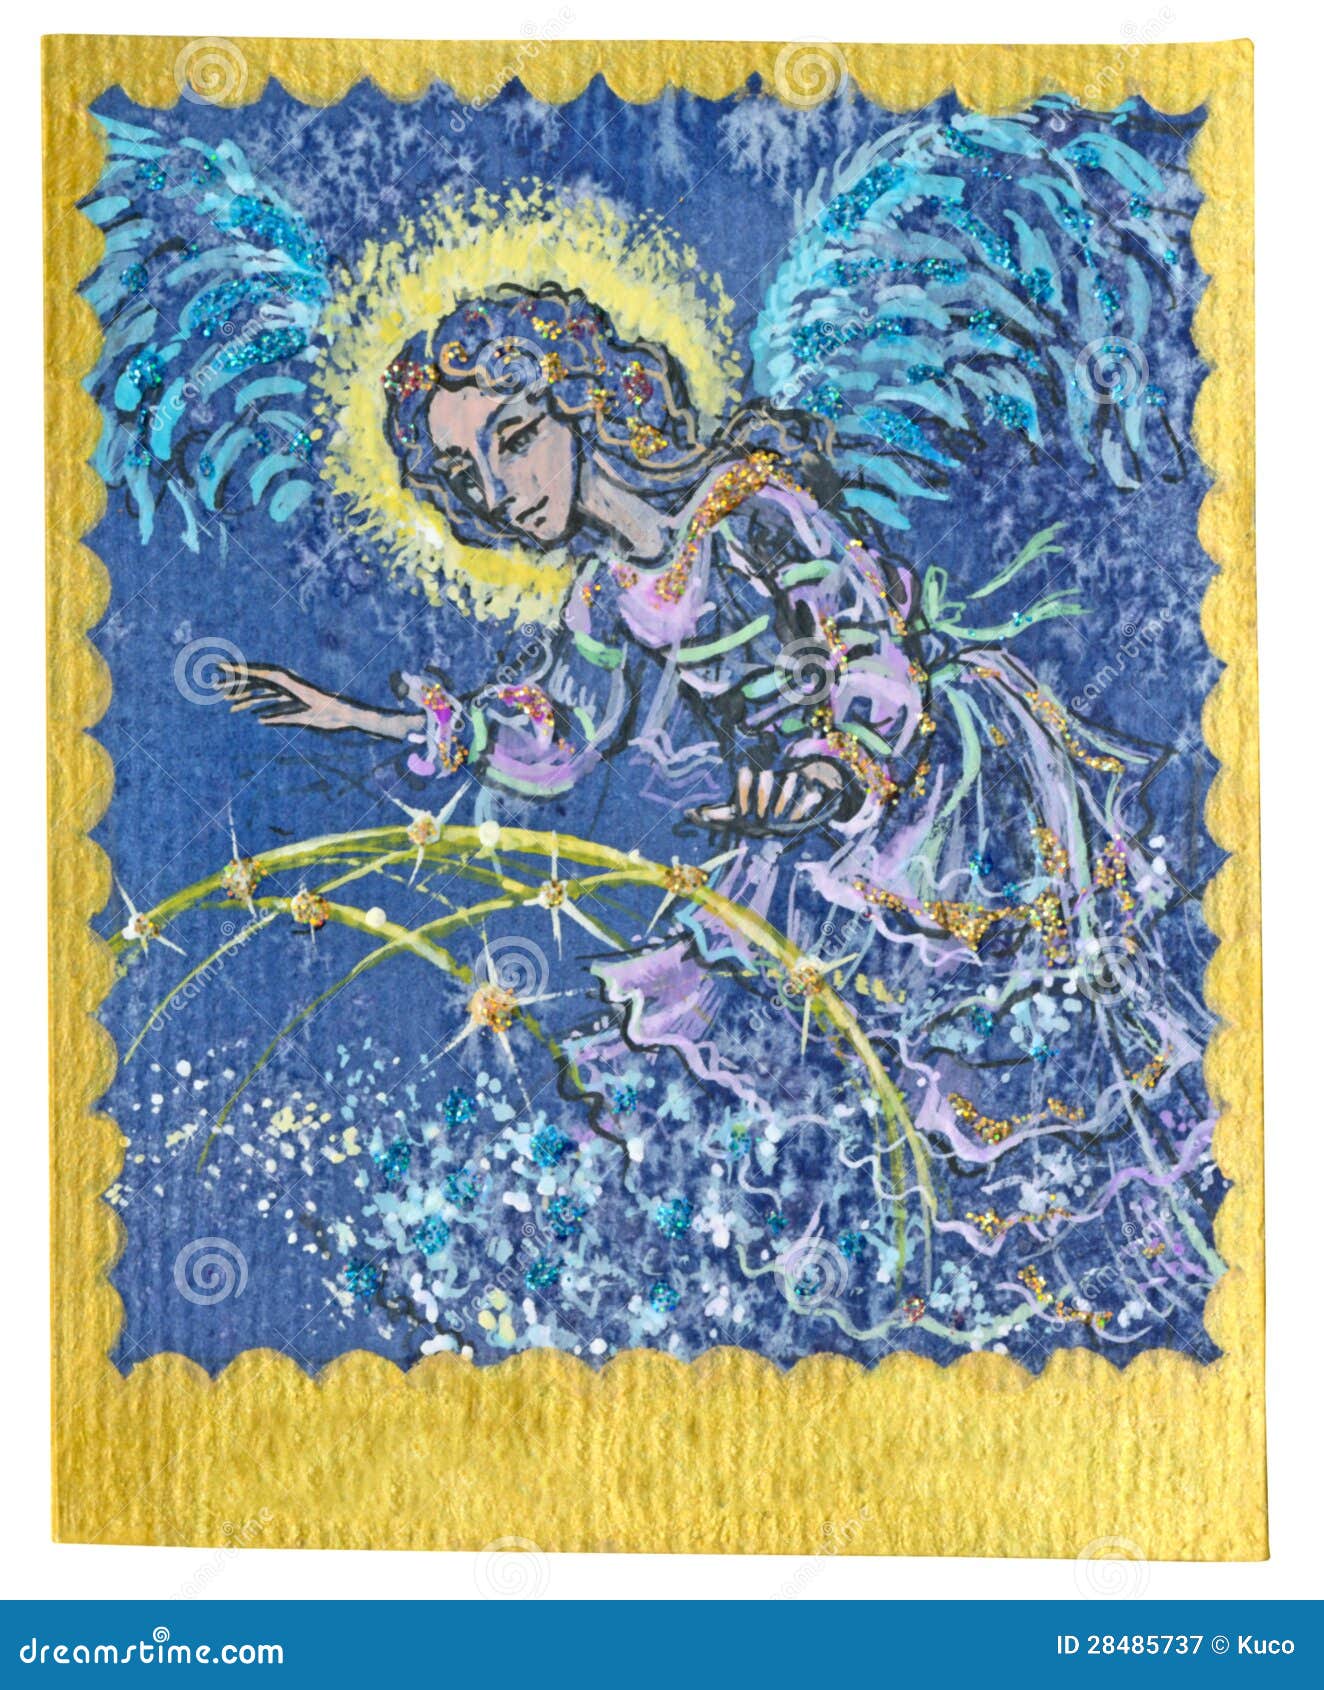 tarot card - guardian angel